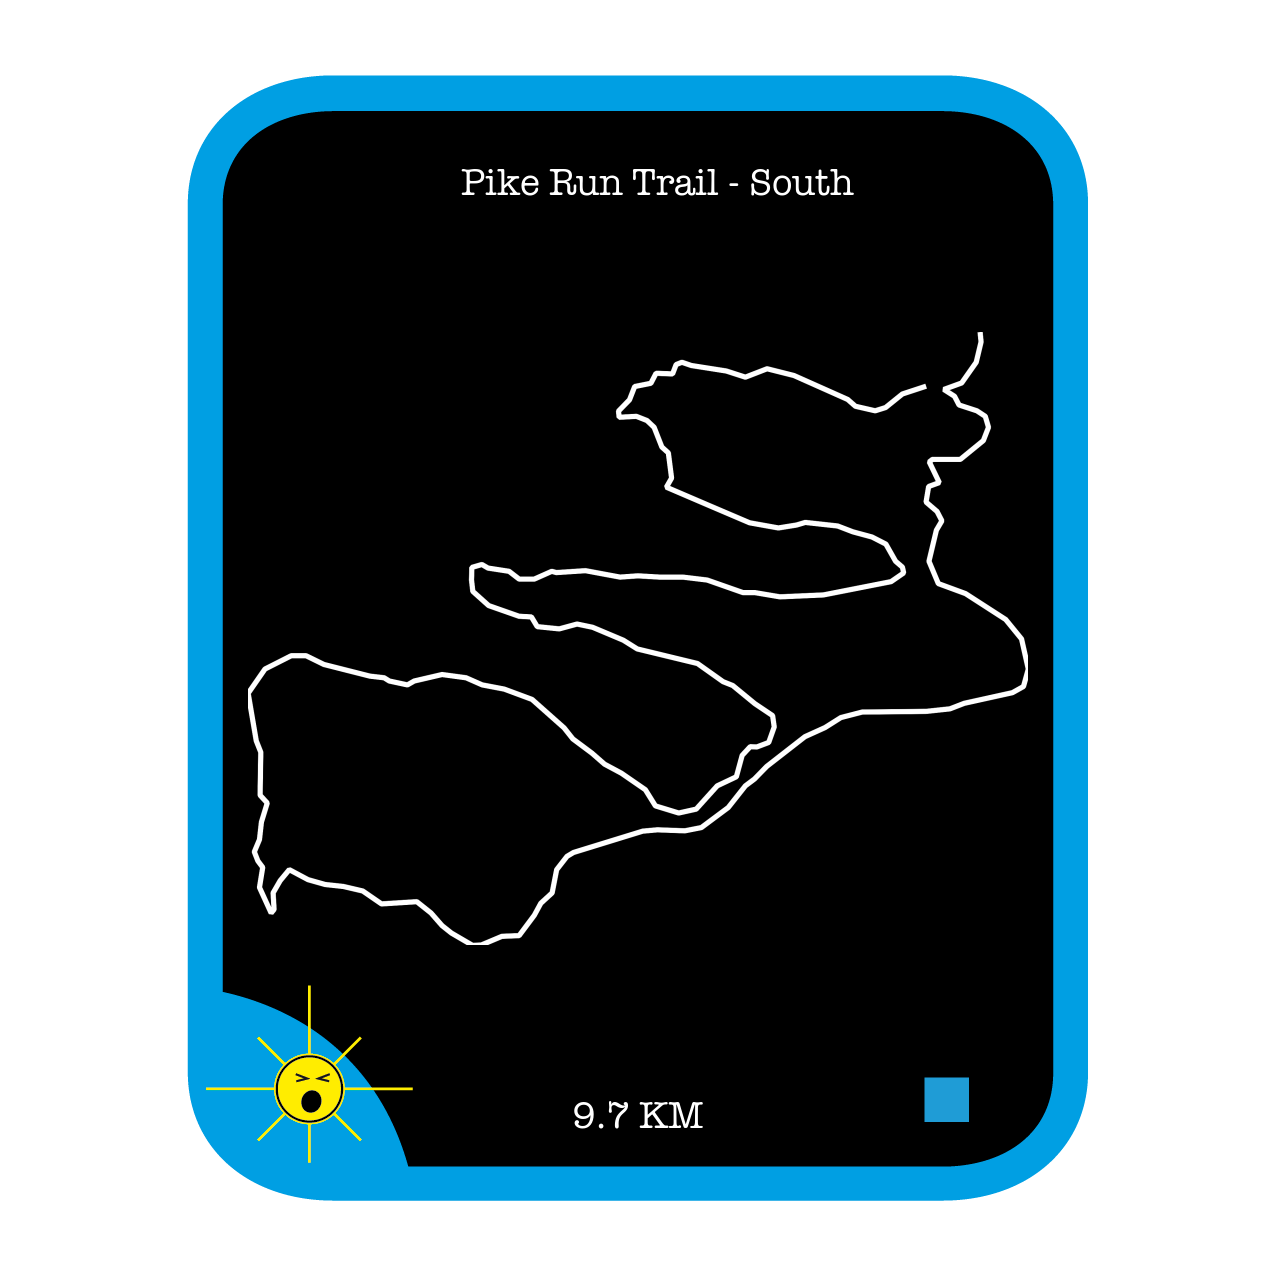 Pike Run Trail - South